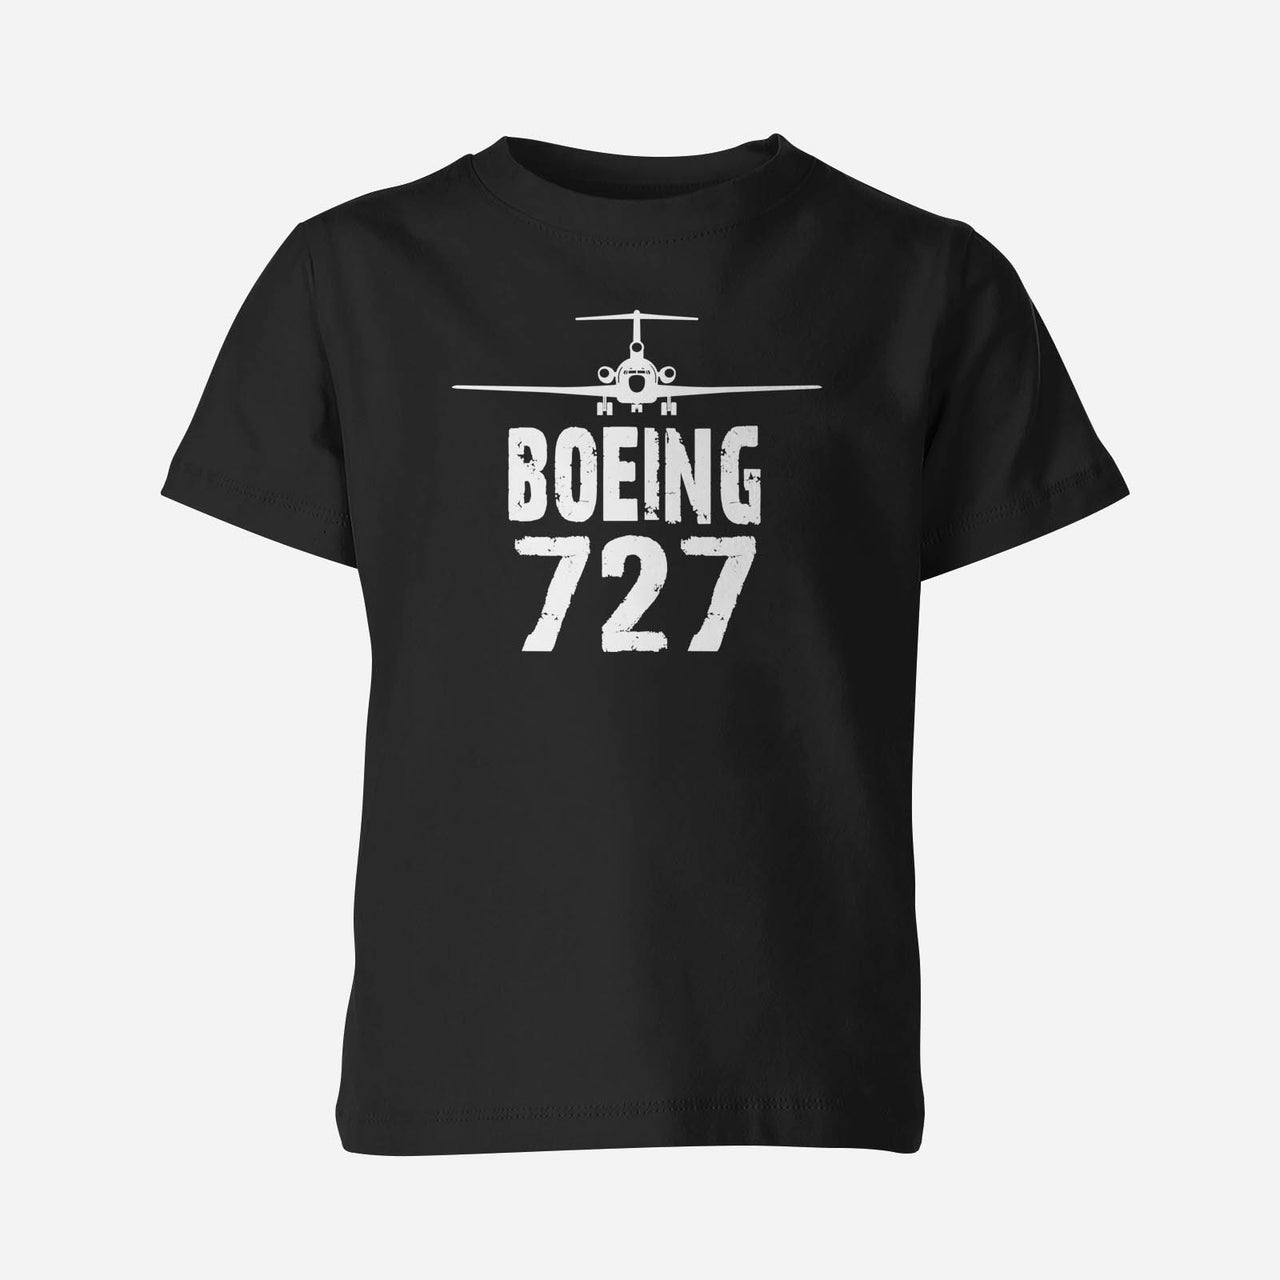 Boeing 727 & Plane Designed Children T-Shirts